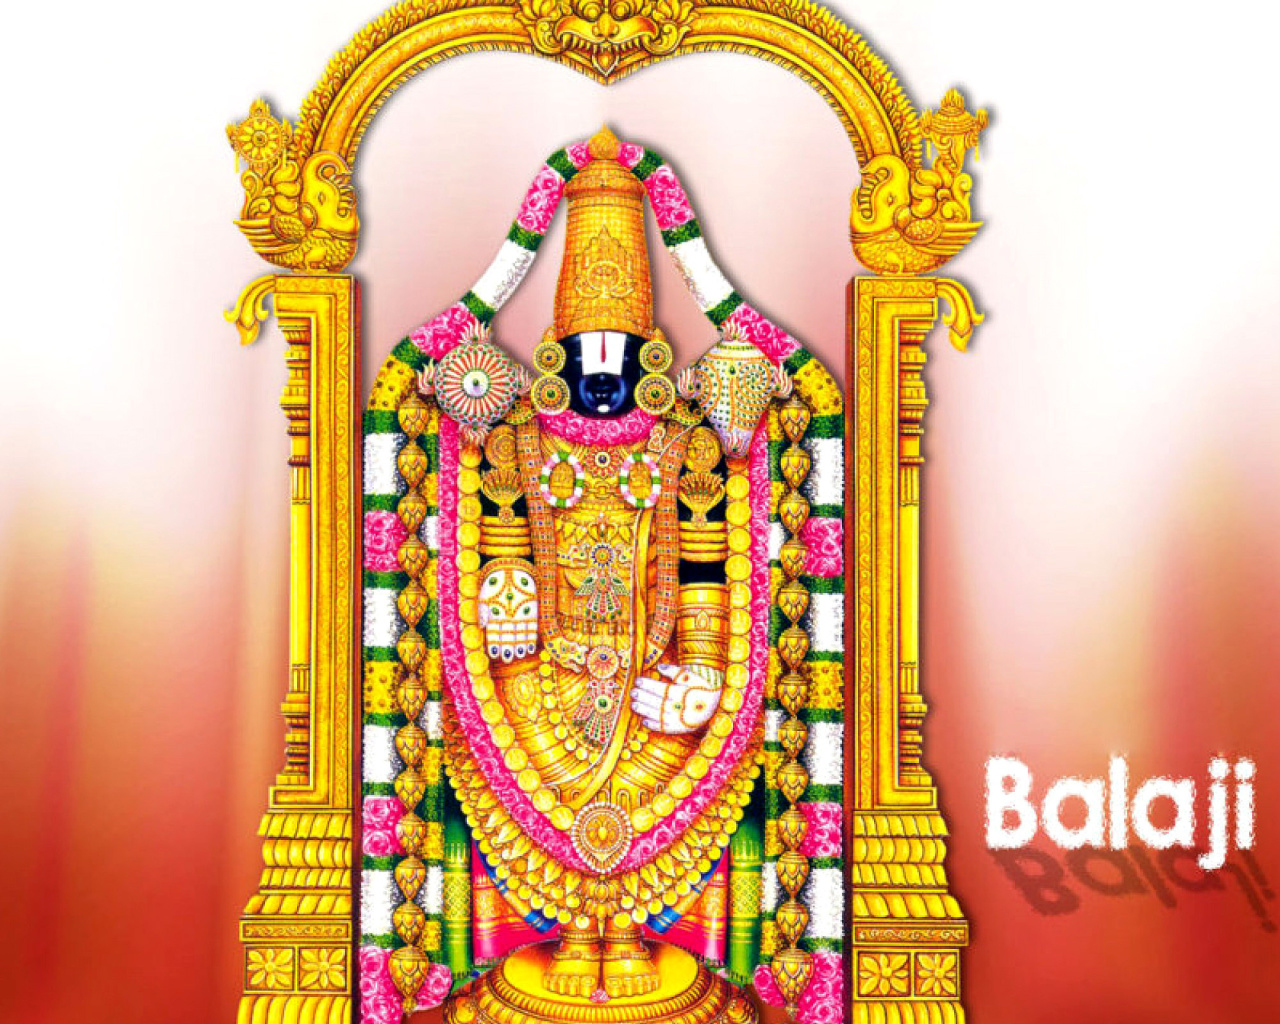 Balaji or Venkateswara God Vishnu wallpaper 1280x1024